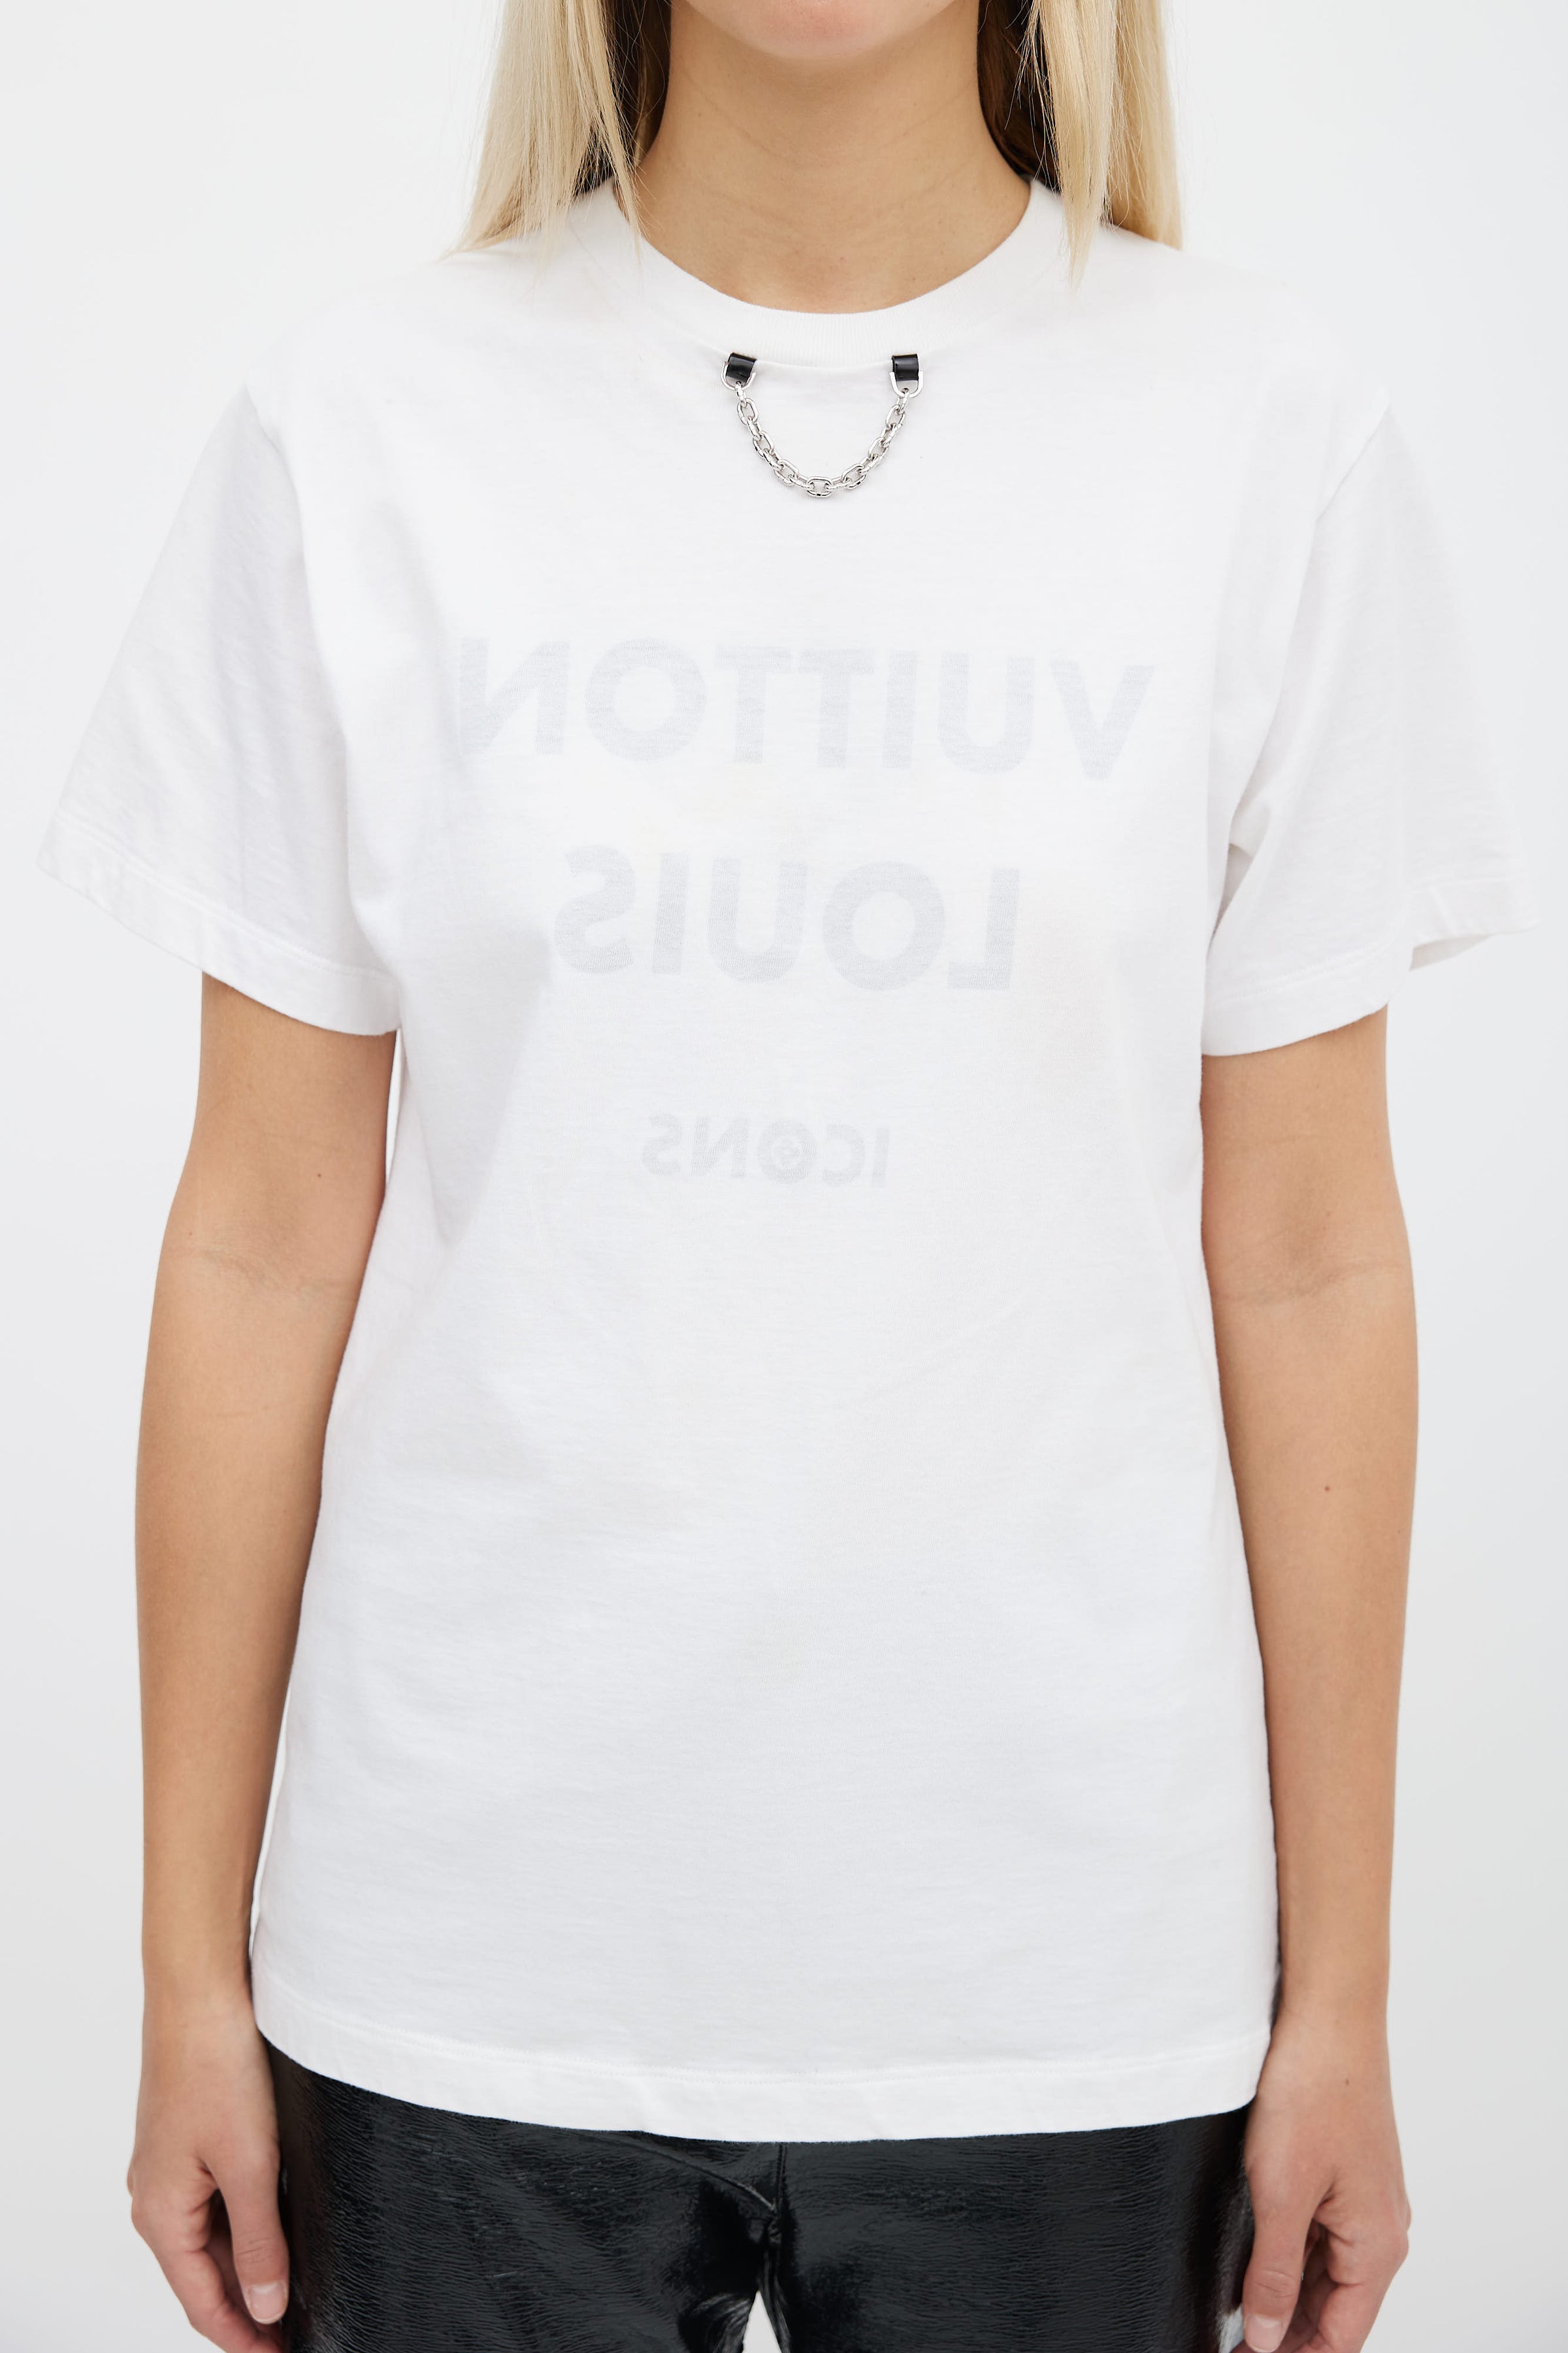 Louis Vuitton Men's Authenticated Shirt